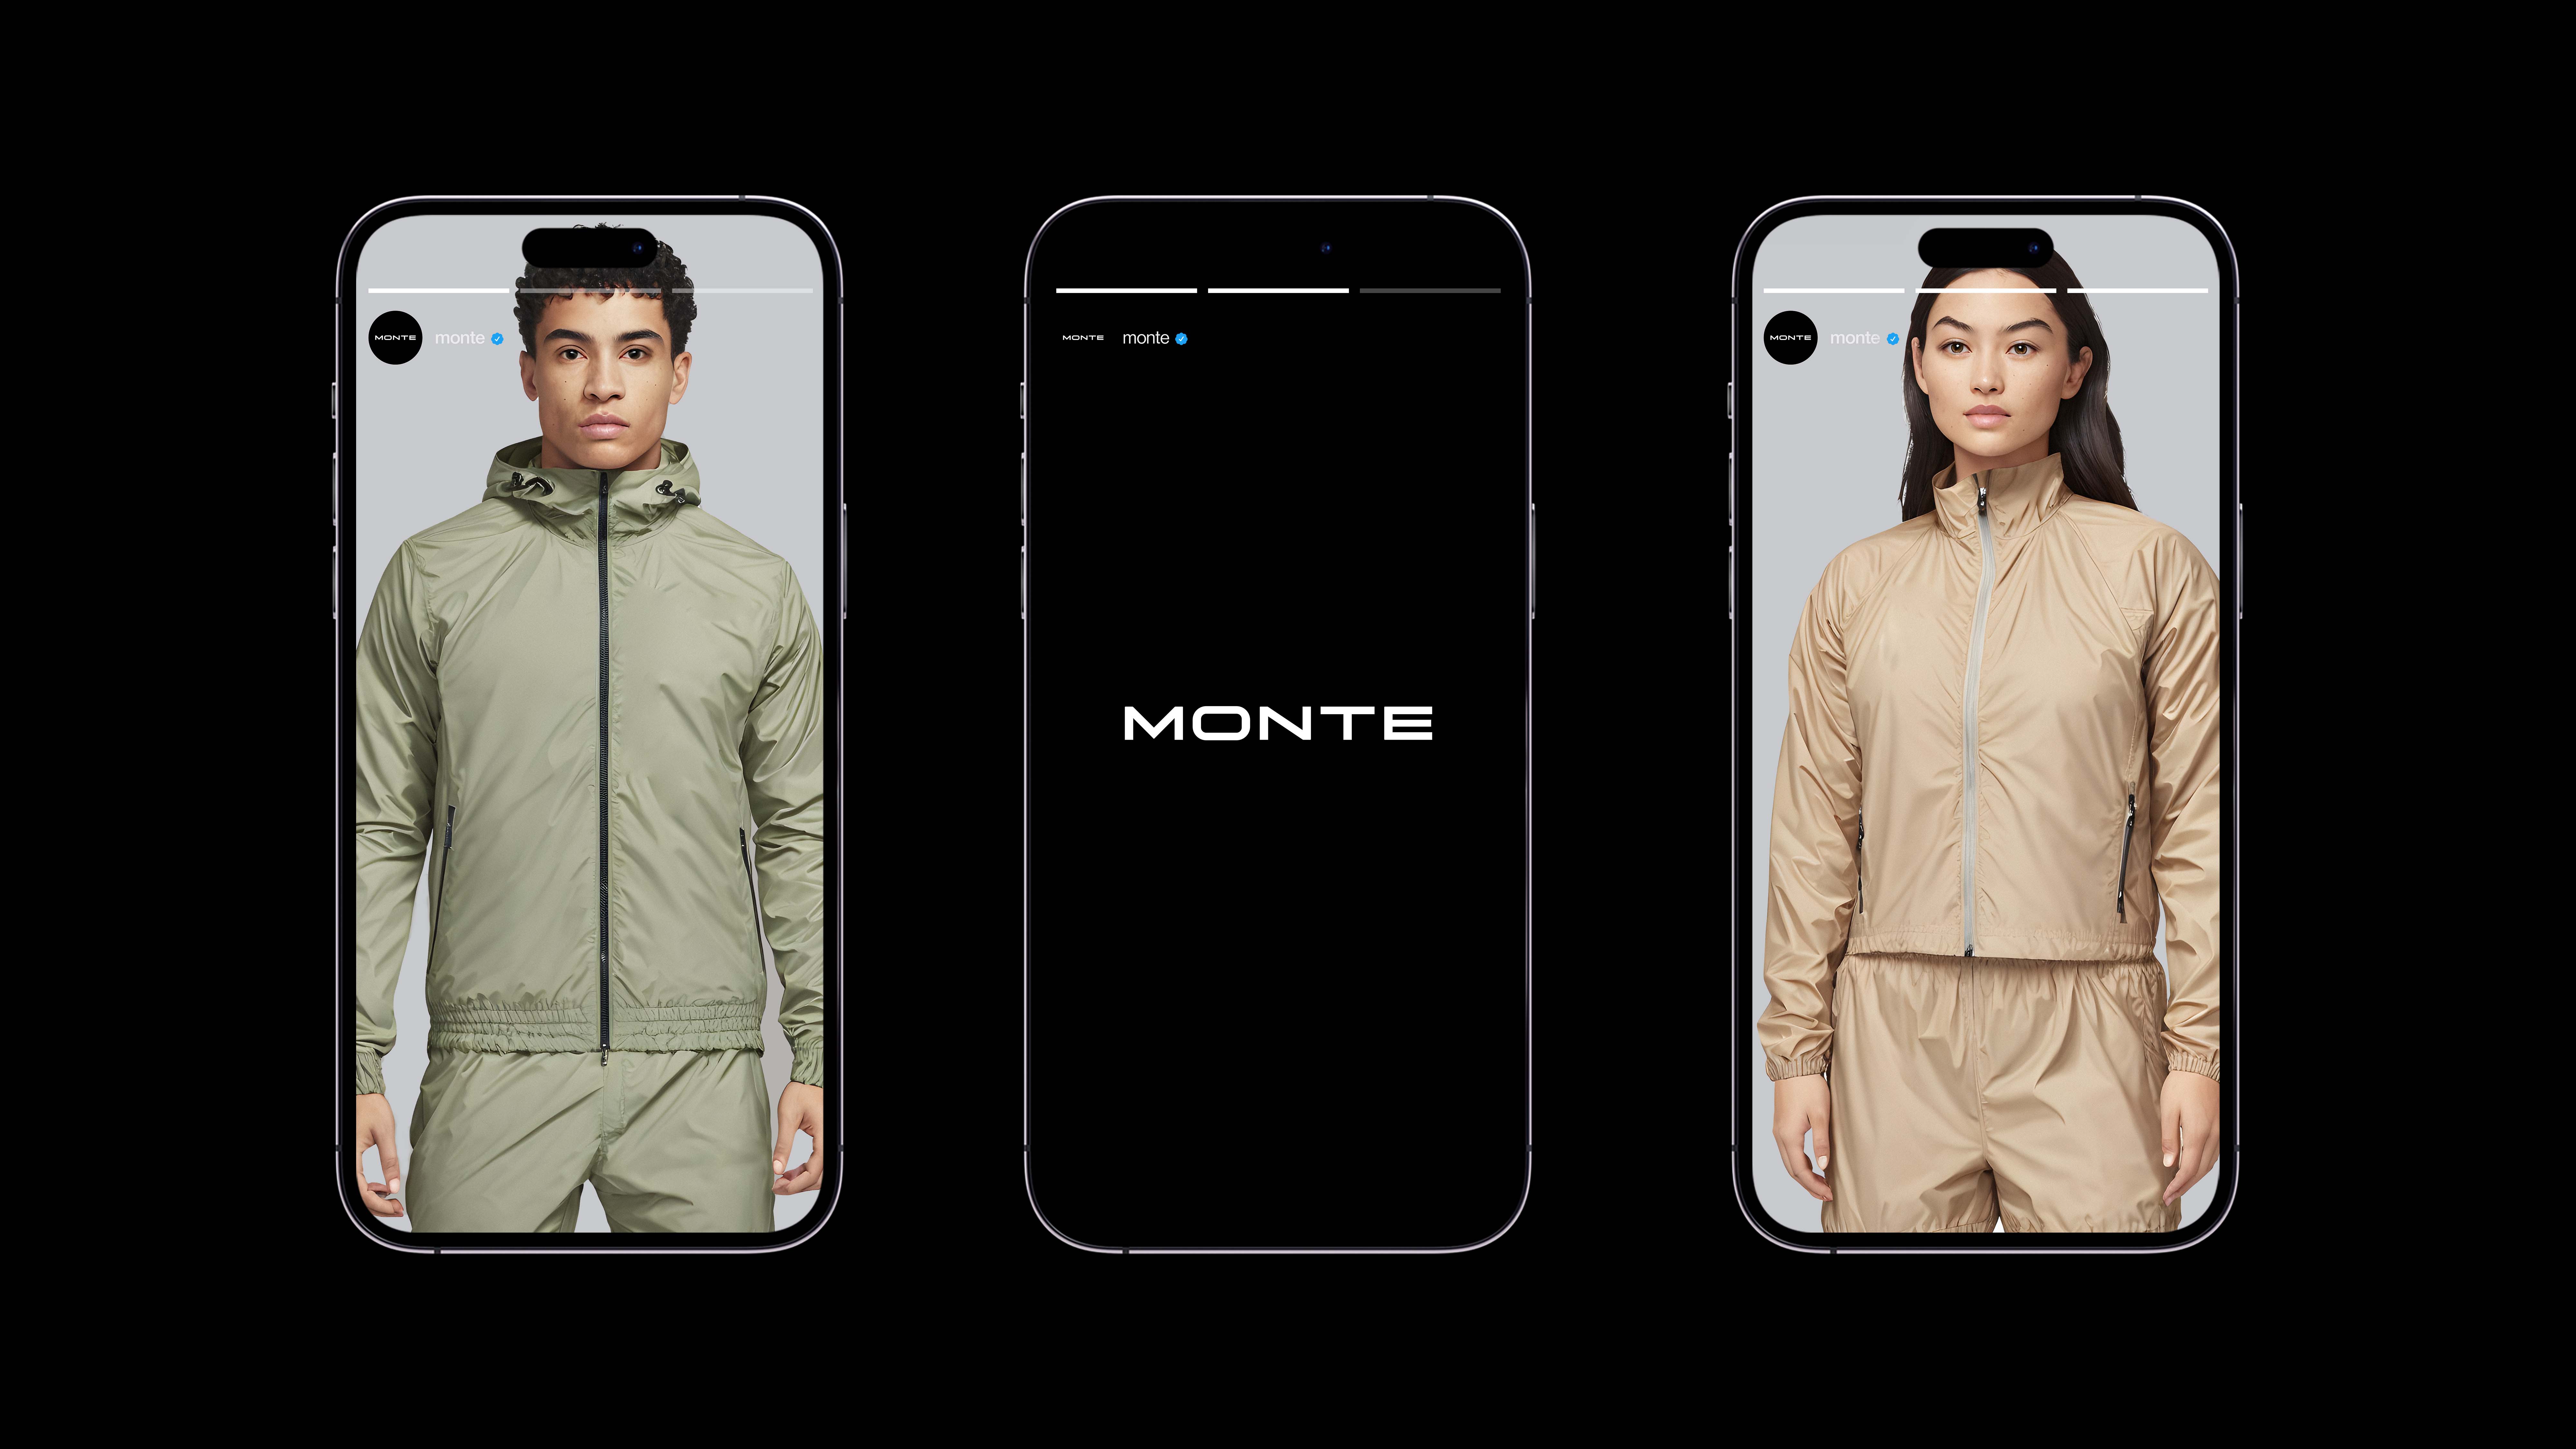 Kit Lim Creates Visual Branding for Fashion Brand Monte